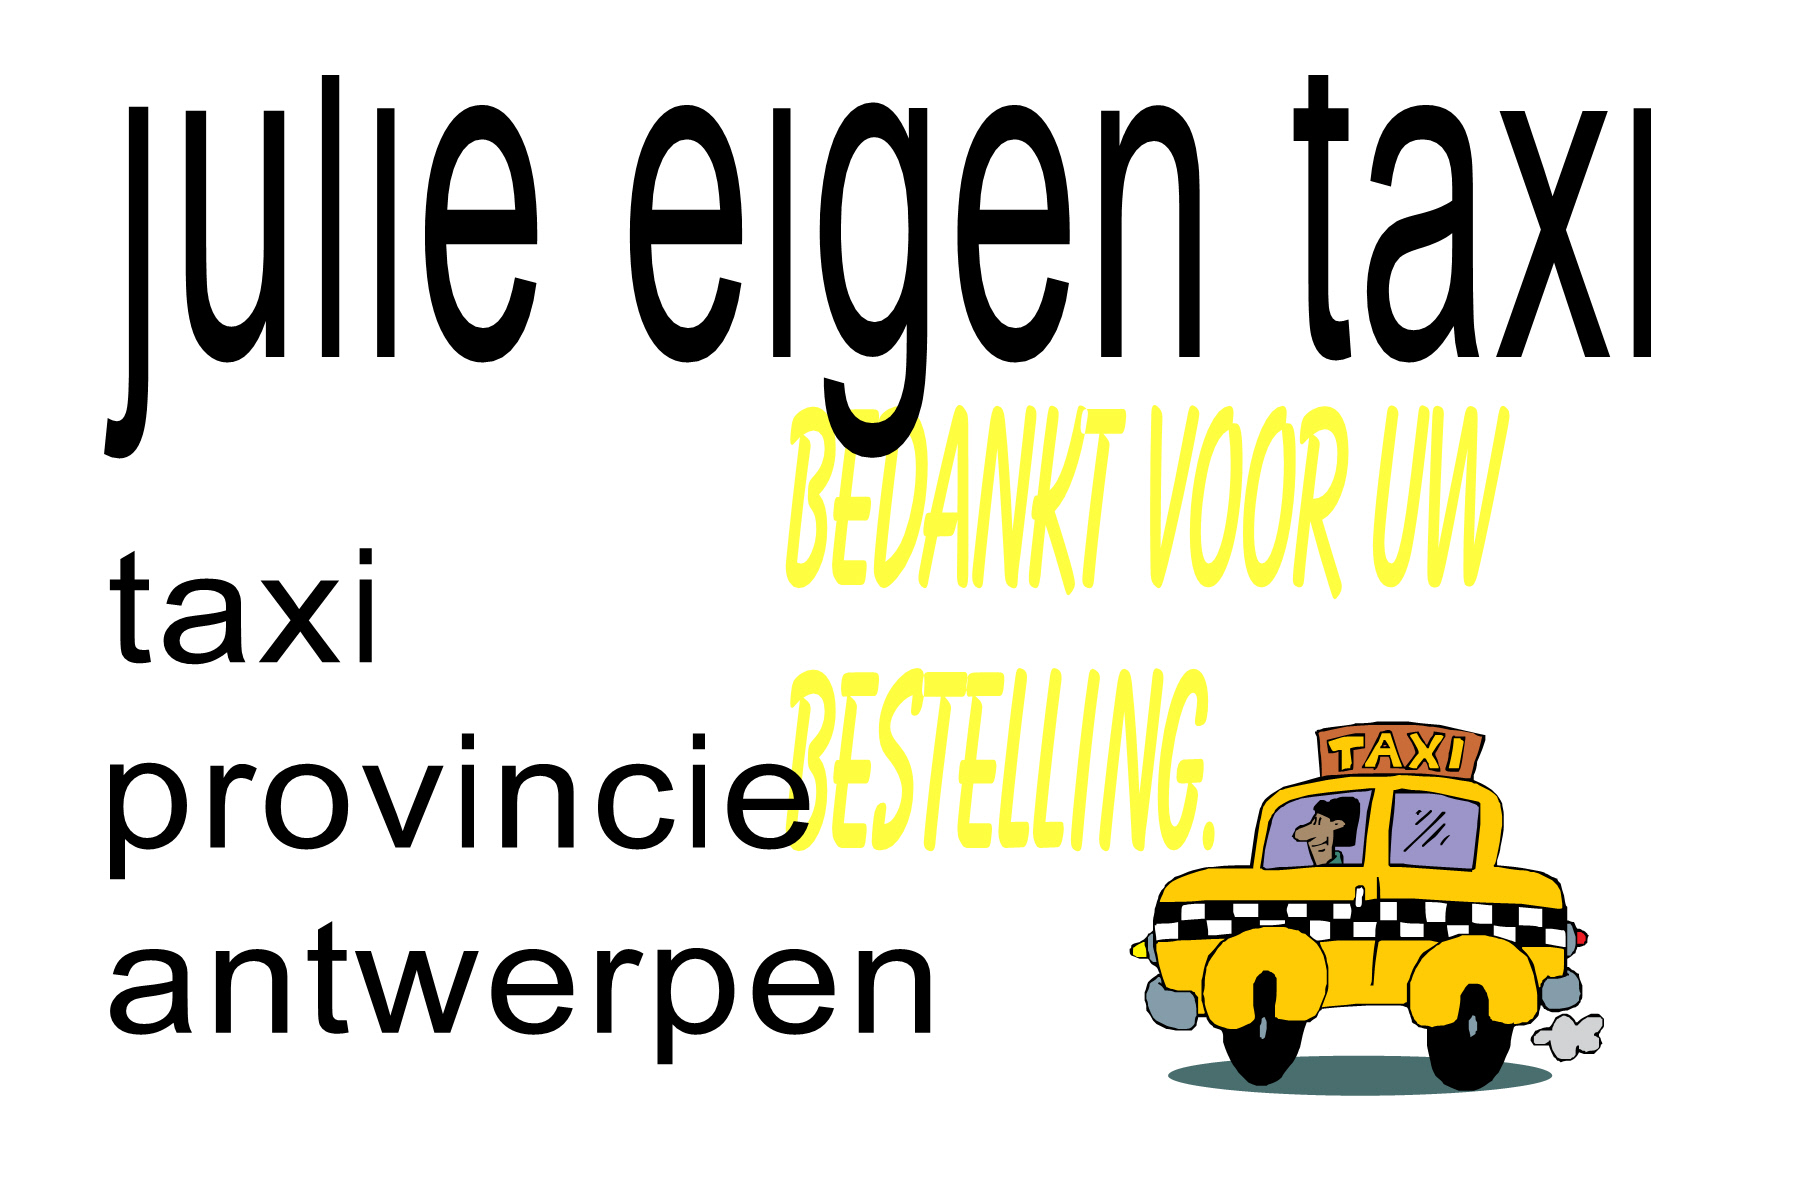 taxibedrijven Antwerpen | taxi in provincie antwerpen